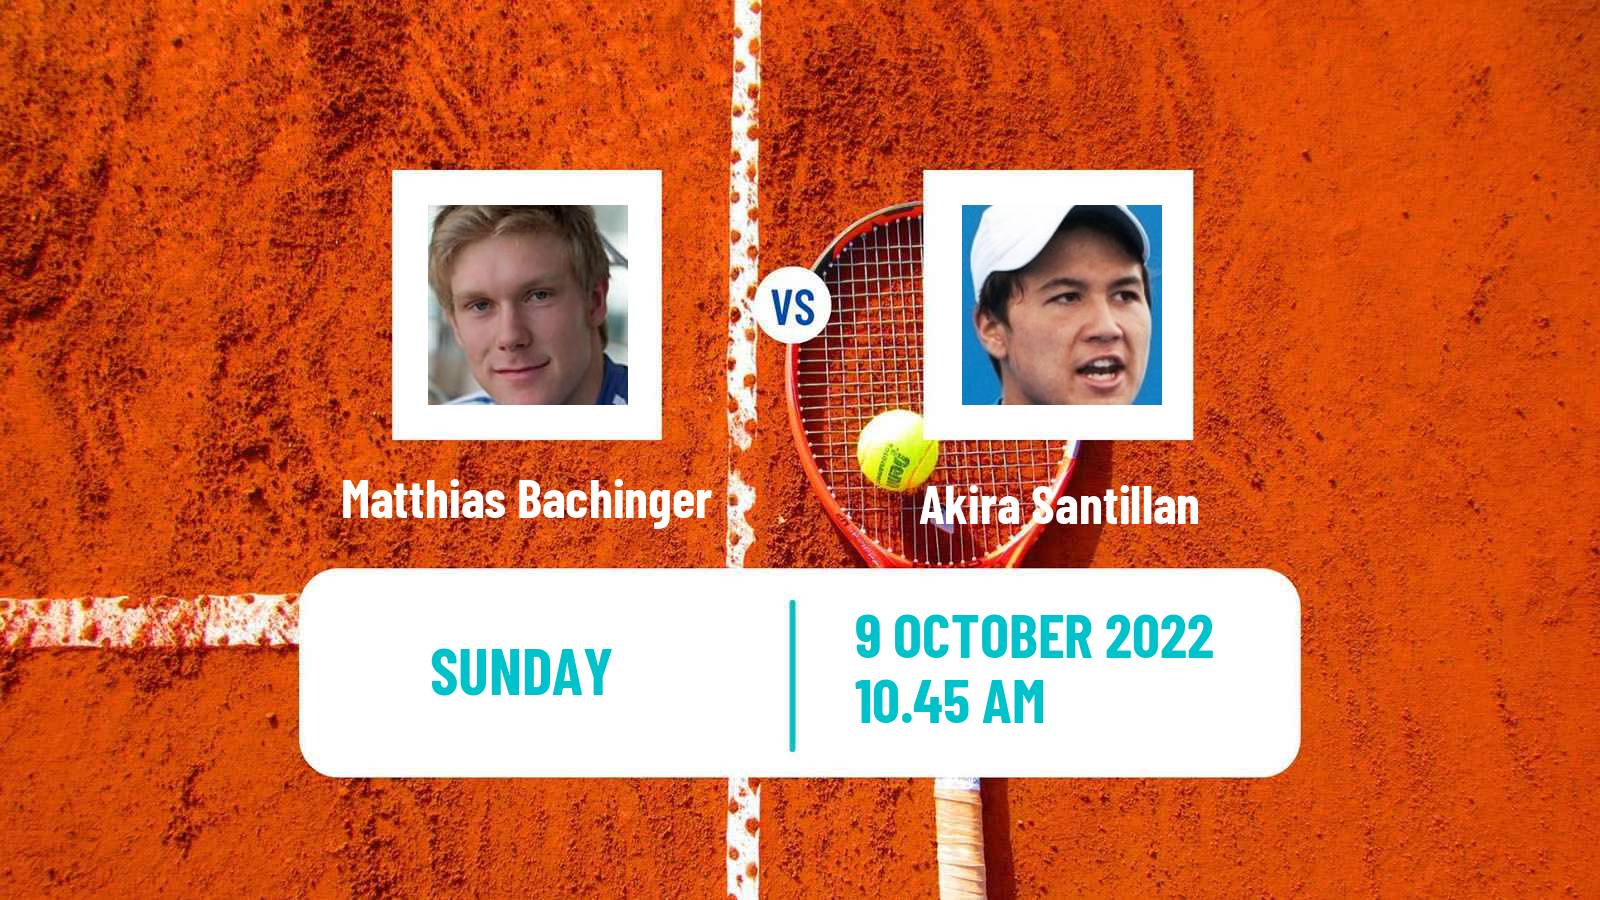 Tennis ATP Challenger Matthias Bachinger - Akira Santillan